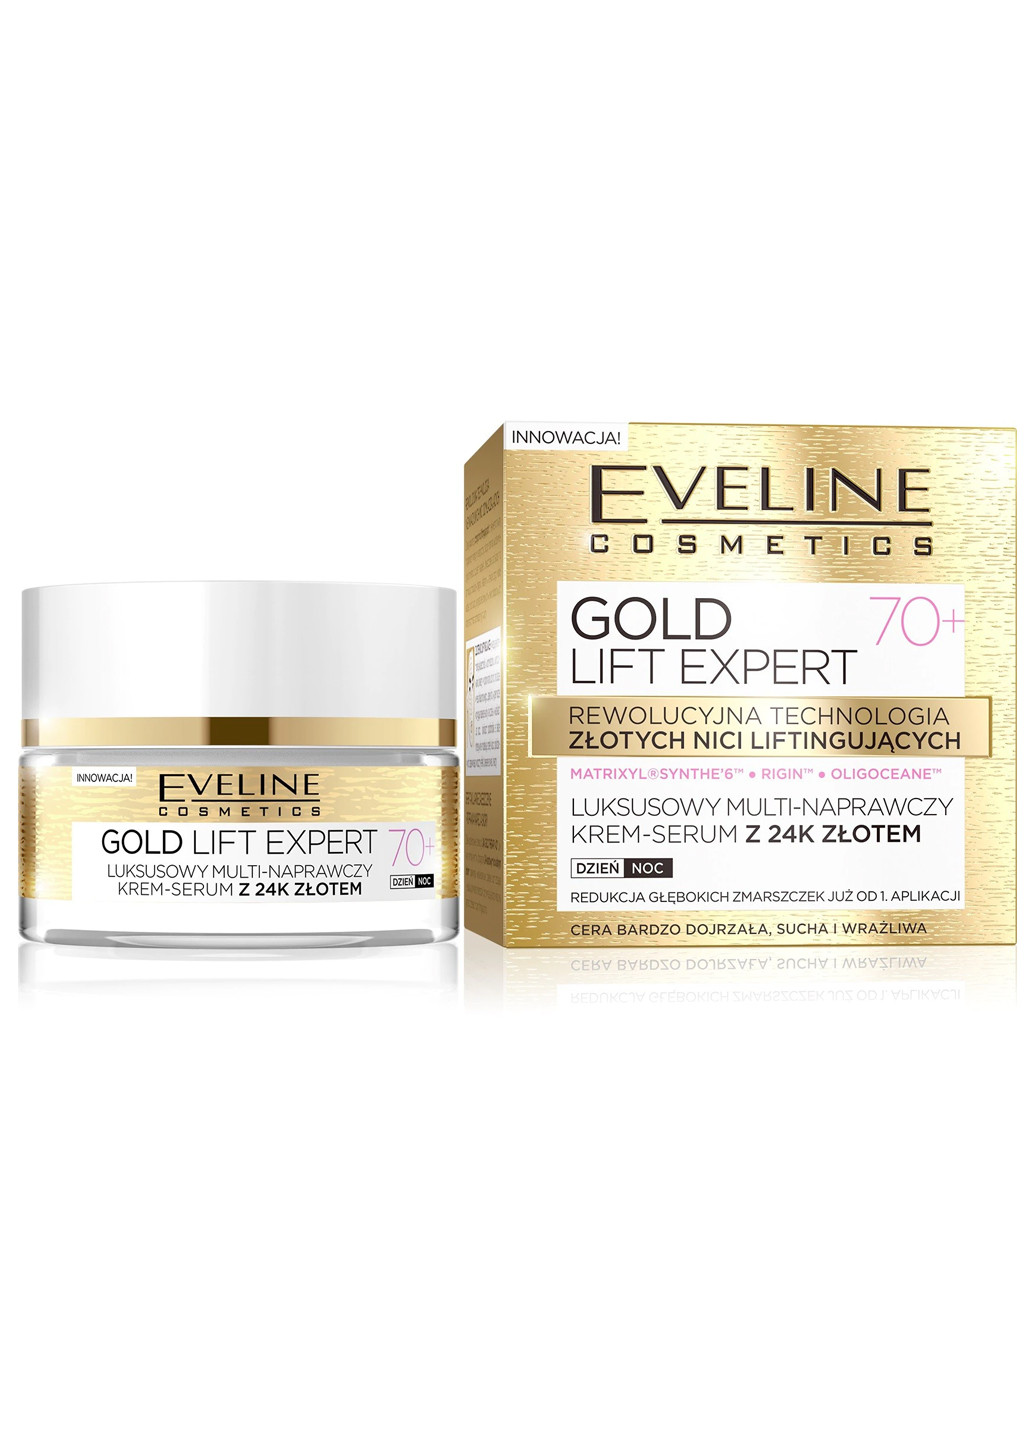 Gold lift expert эксклюзивный ультра восстанавливающий крем-сыворотка 70+, 50 мл Eveline Cosmetics 5901761941968 (256234131)